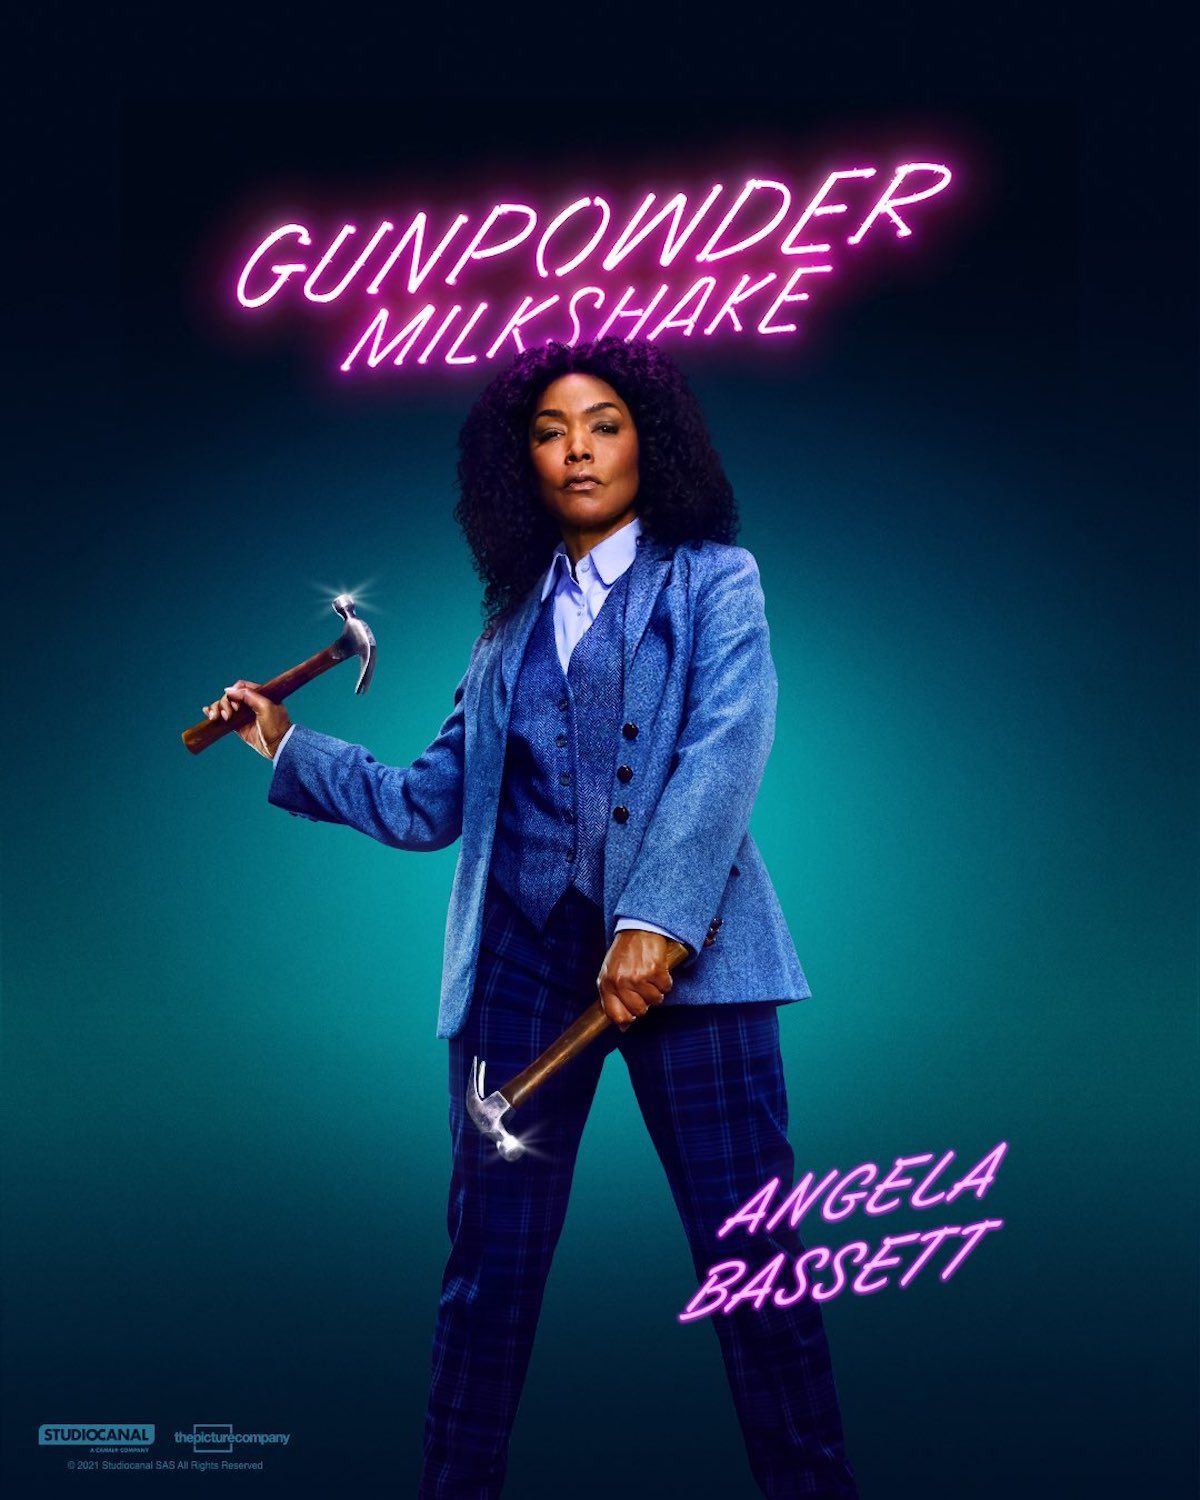 gunpowder-milkshake-angela-bassett-poster